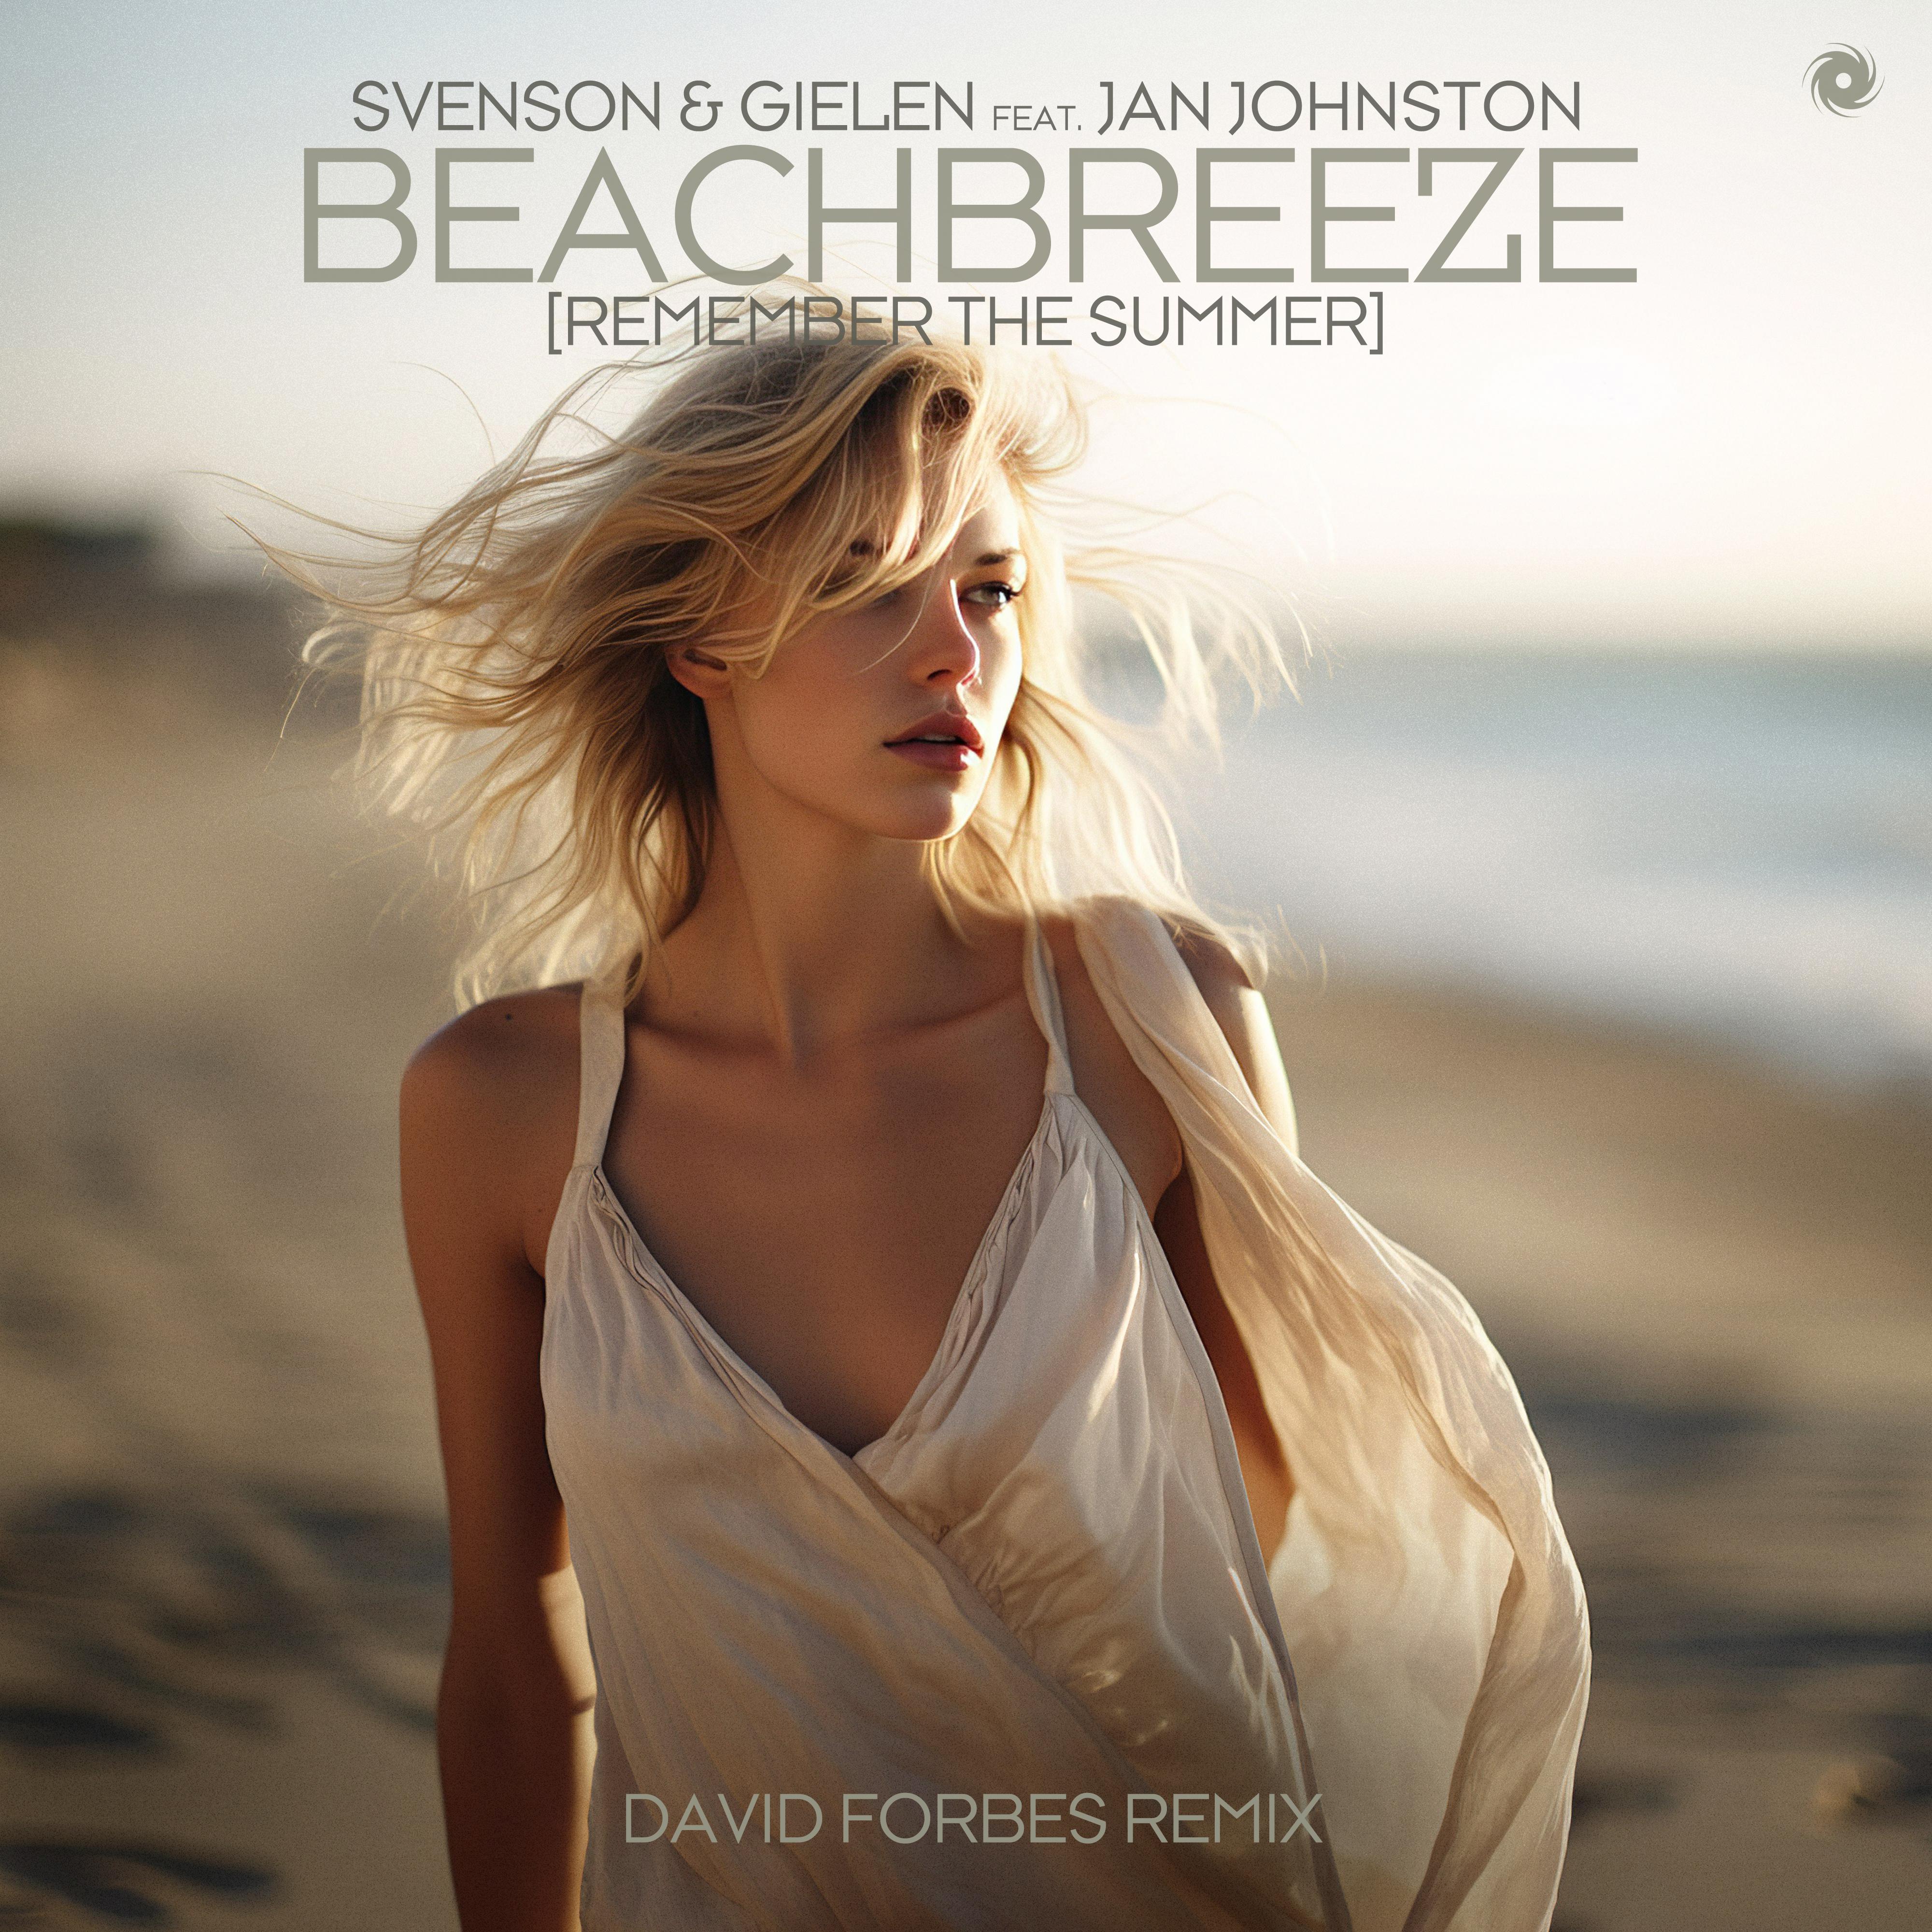 Svenson & Gielen - Beachbreeze [Remember the Summer] (David Forbes Remix)